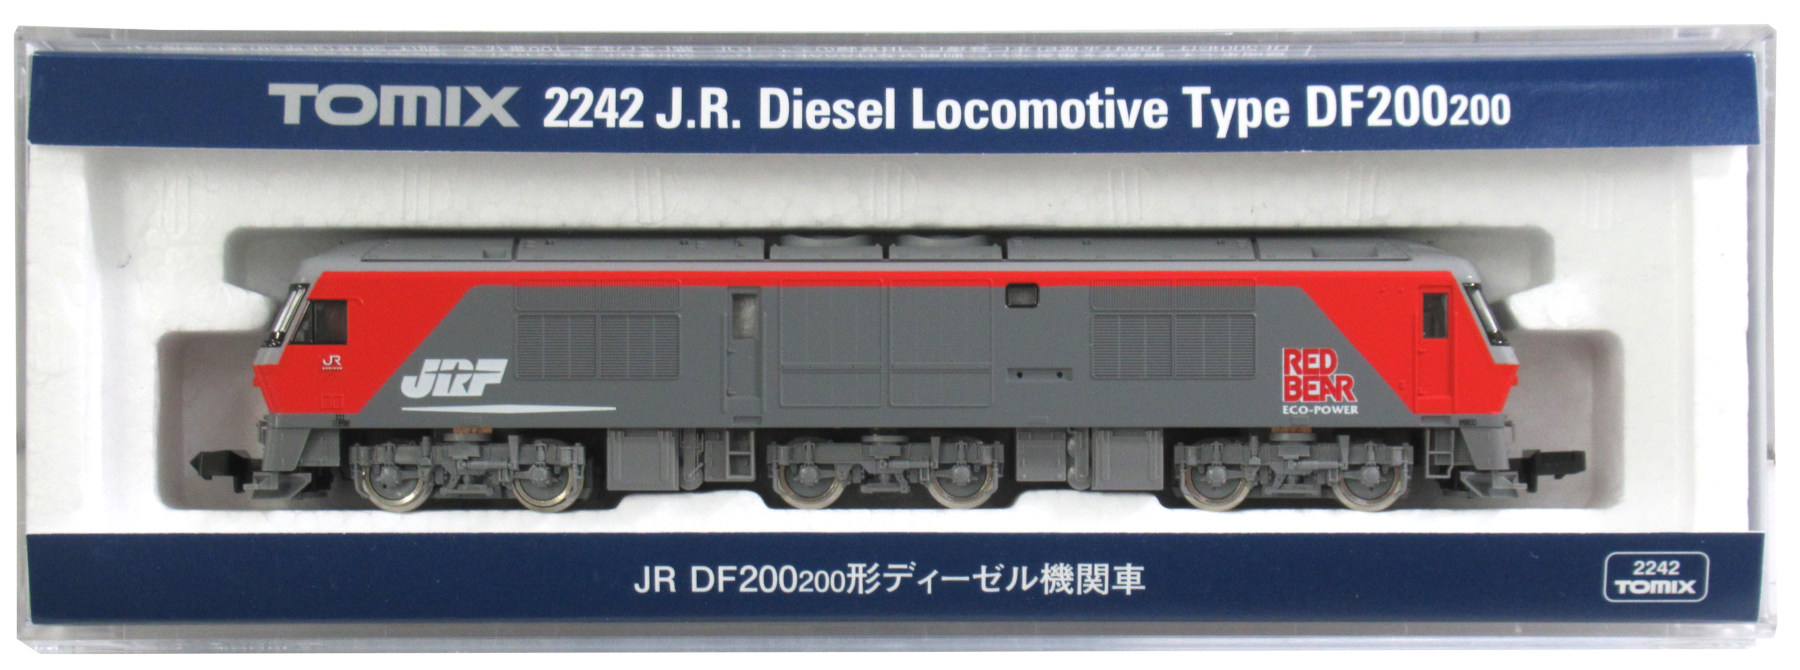 2242 JR DF200-200形 2019年ロット